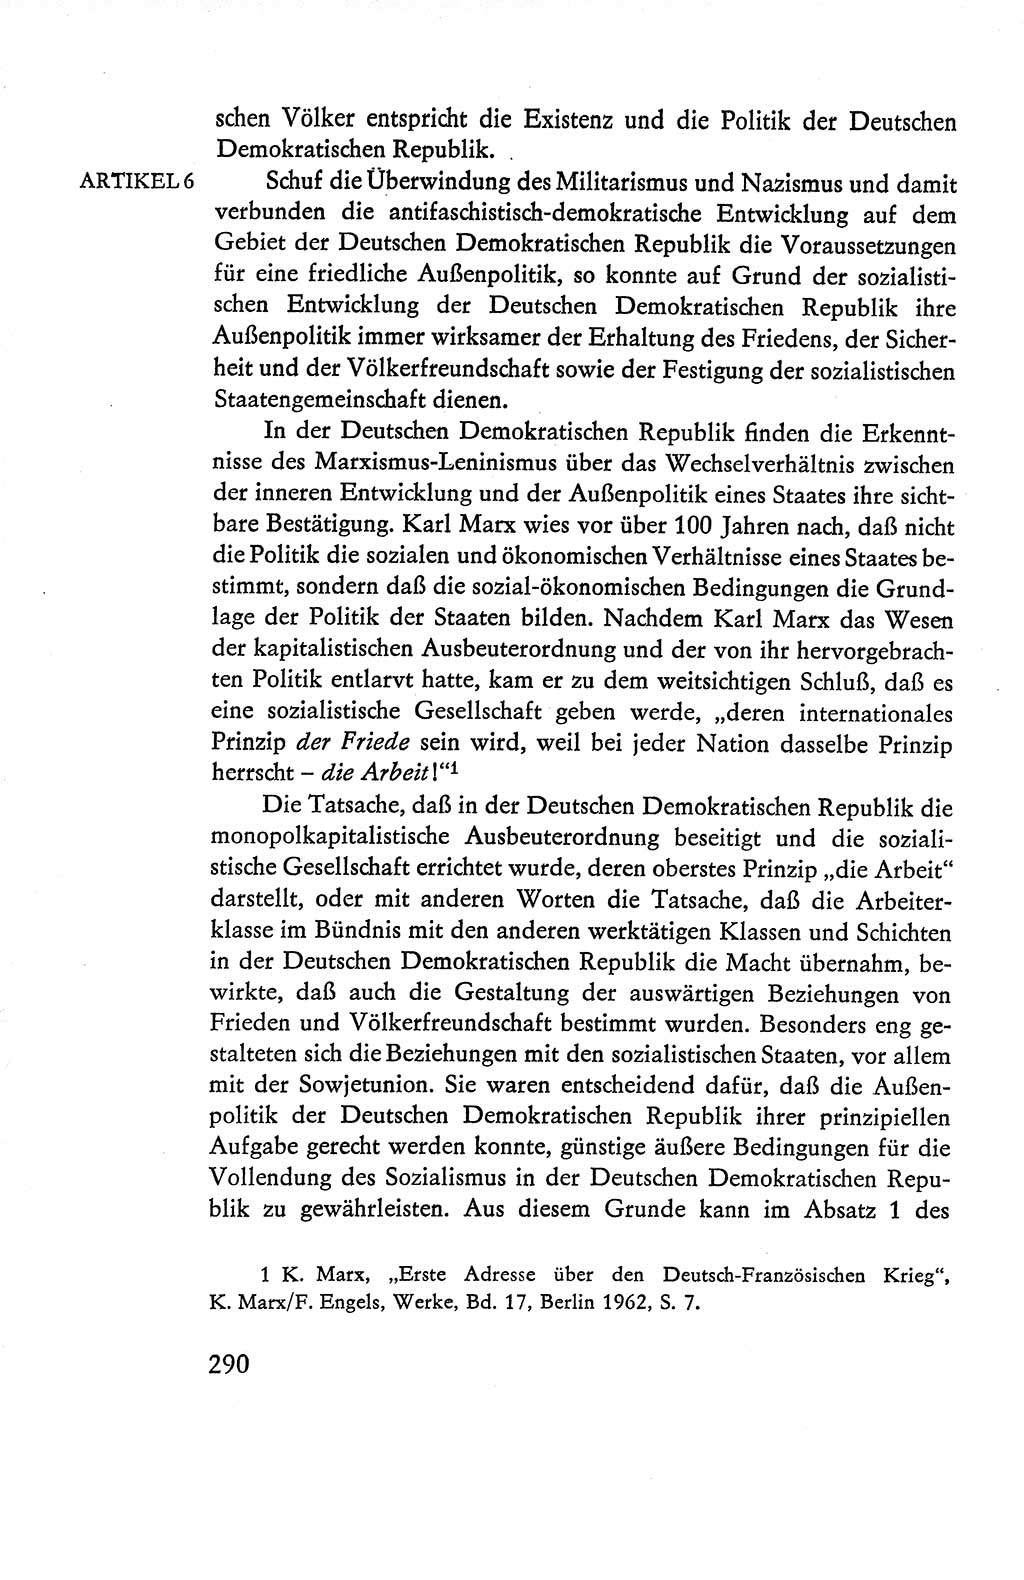 Verfassung der Deutschen Demokratischen Republik (DDR), Dokumente, Kommentar 1969, Band 1, Seite 290 (Verf. DDR Dok. Komm. 1969, Bd. 1, S. 290)